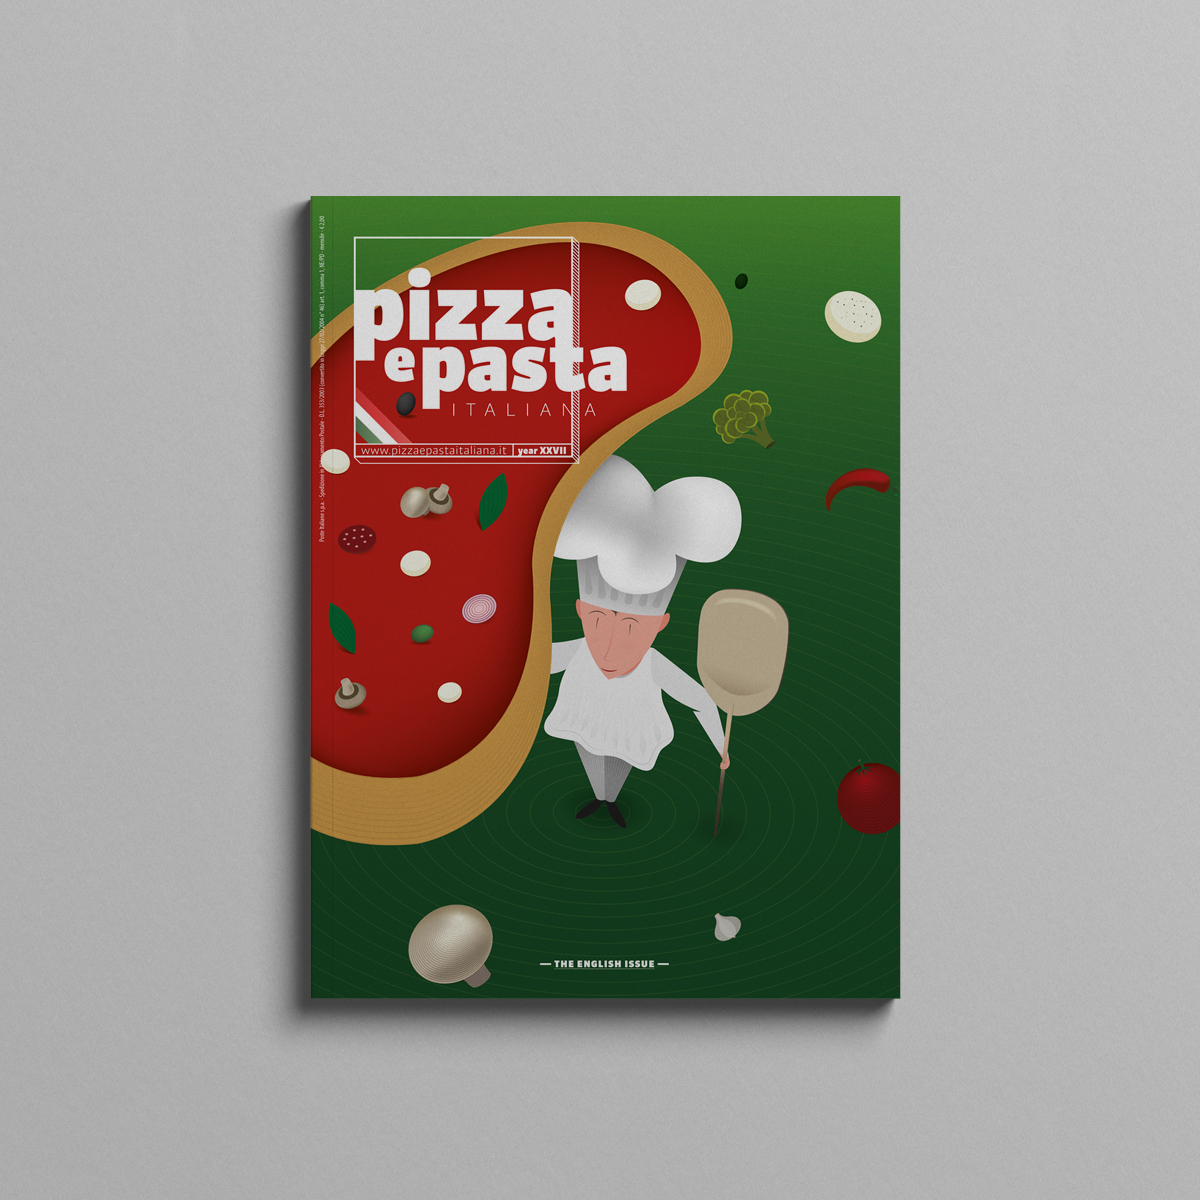 Pizza e pasta copertina illustrazione pizza